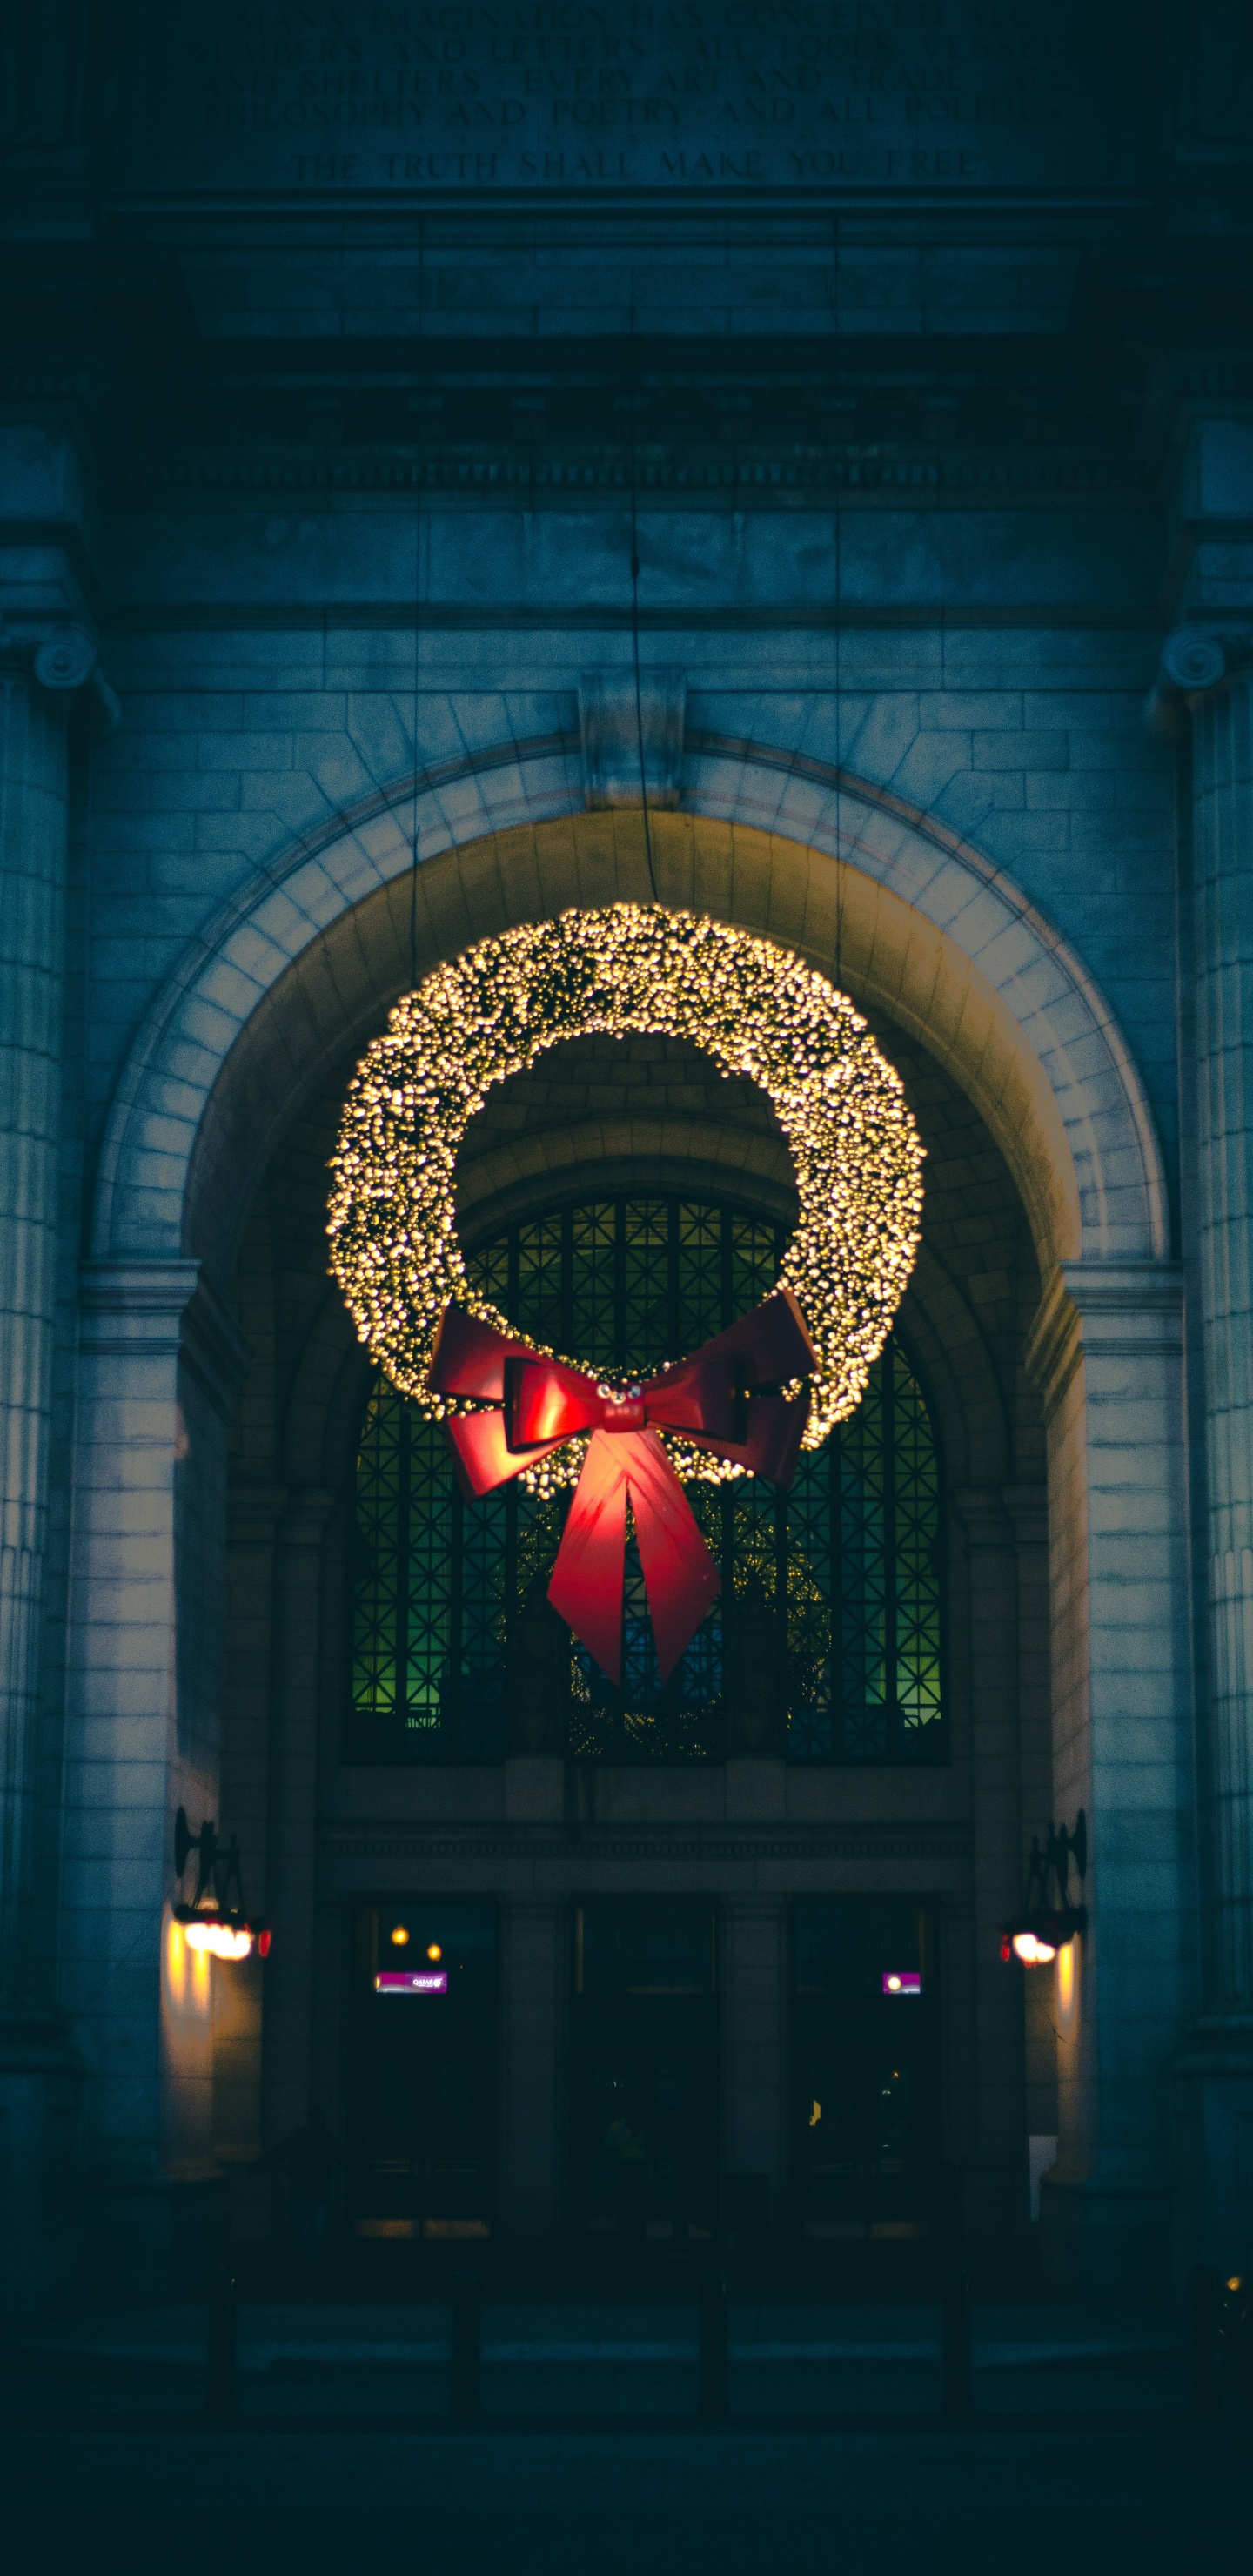 Le Jour De Noël, Lumière, Éclairage, Architecture, Nuit. Wallpaper in 1440x2960 Resolution